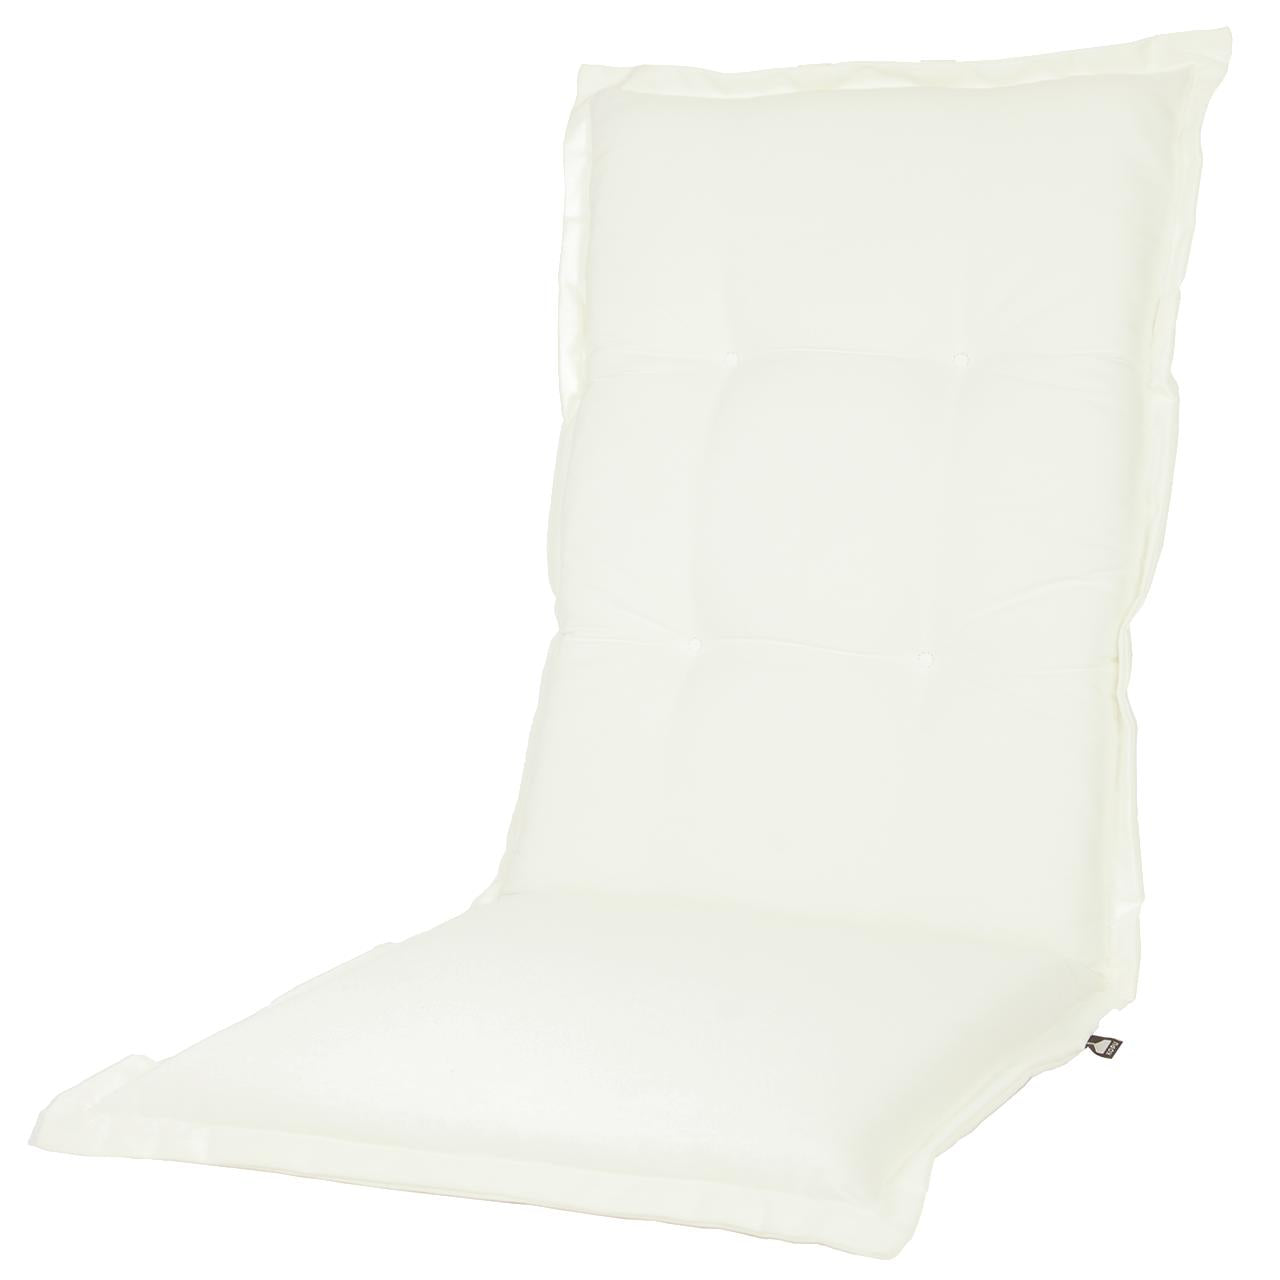 Kopu® Prisma Ivory – Bequemes Gartenkissen mit hoher Rückenlehne – Weiß